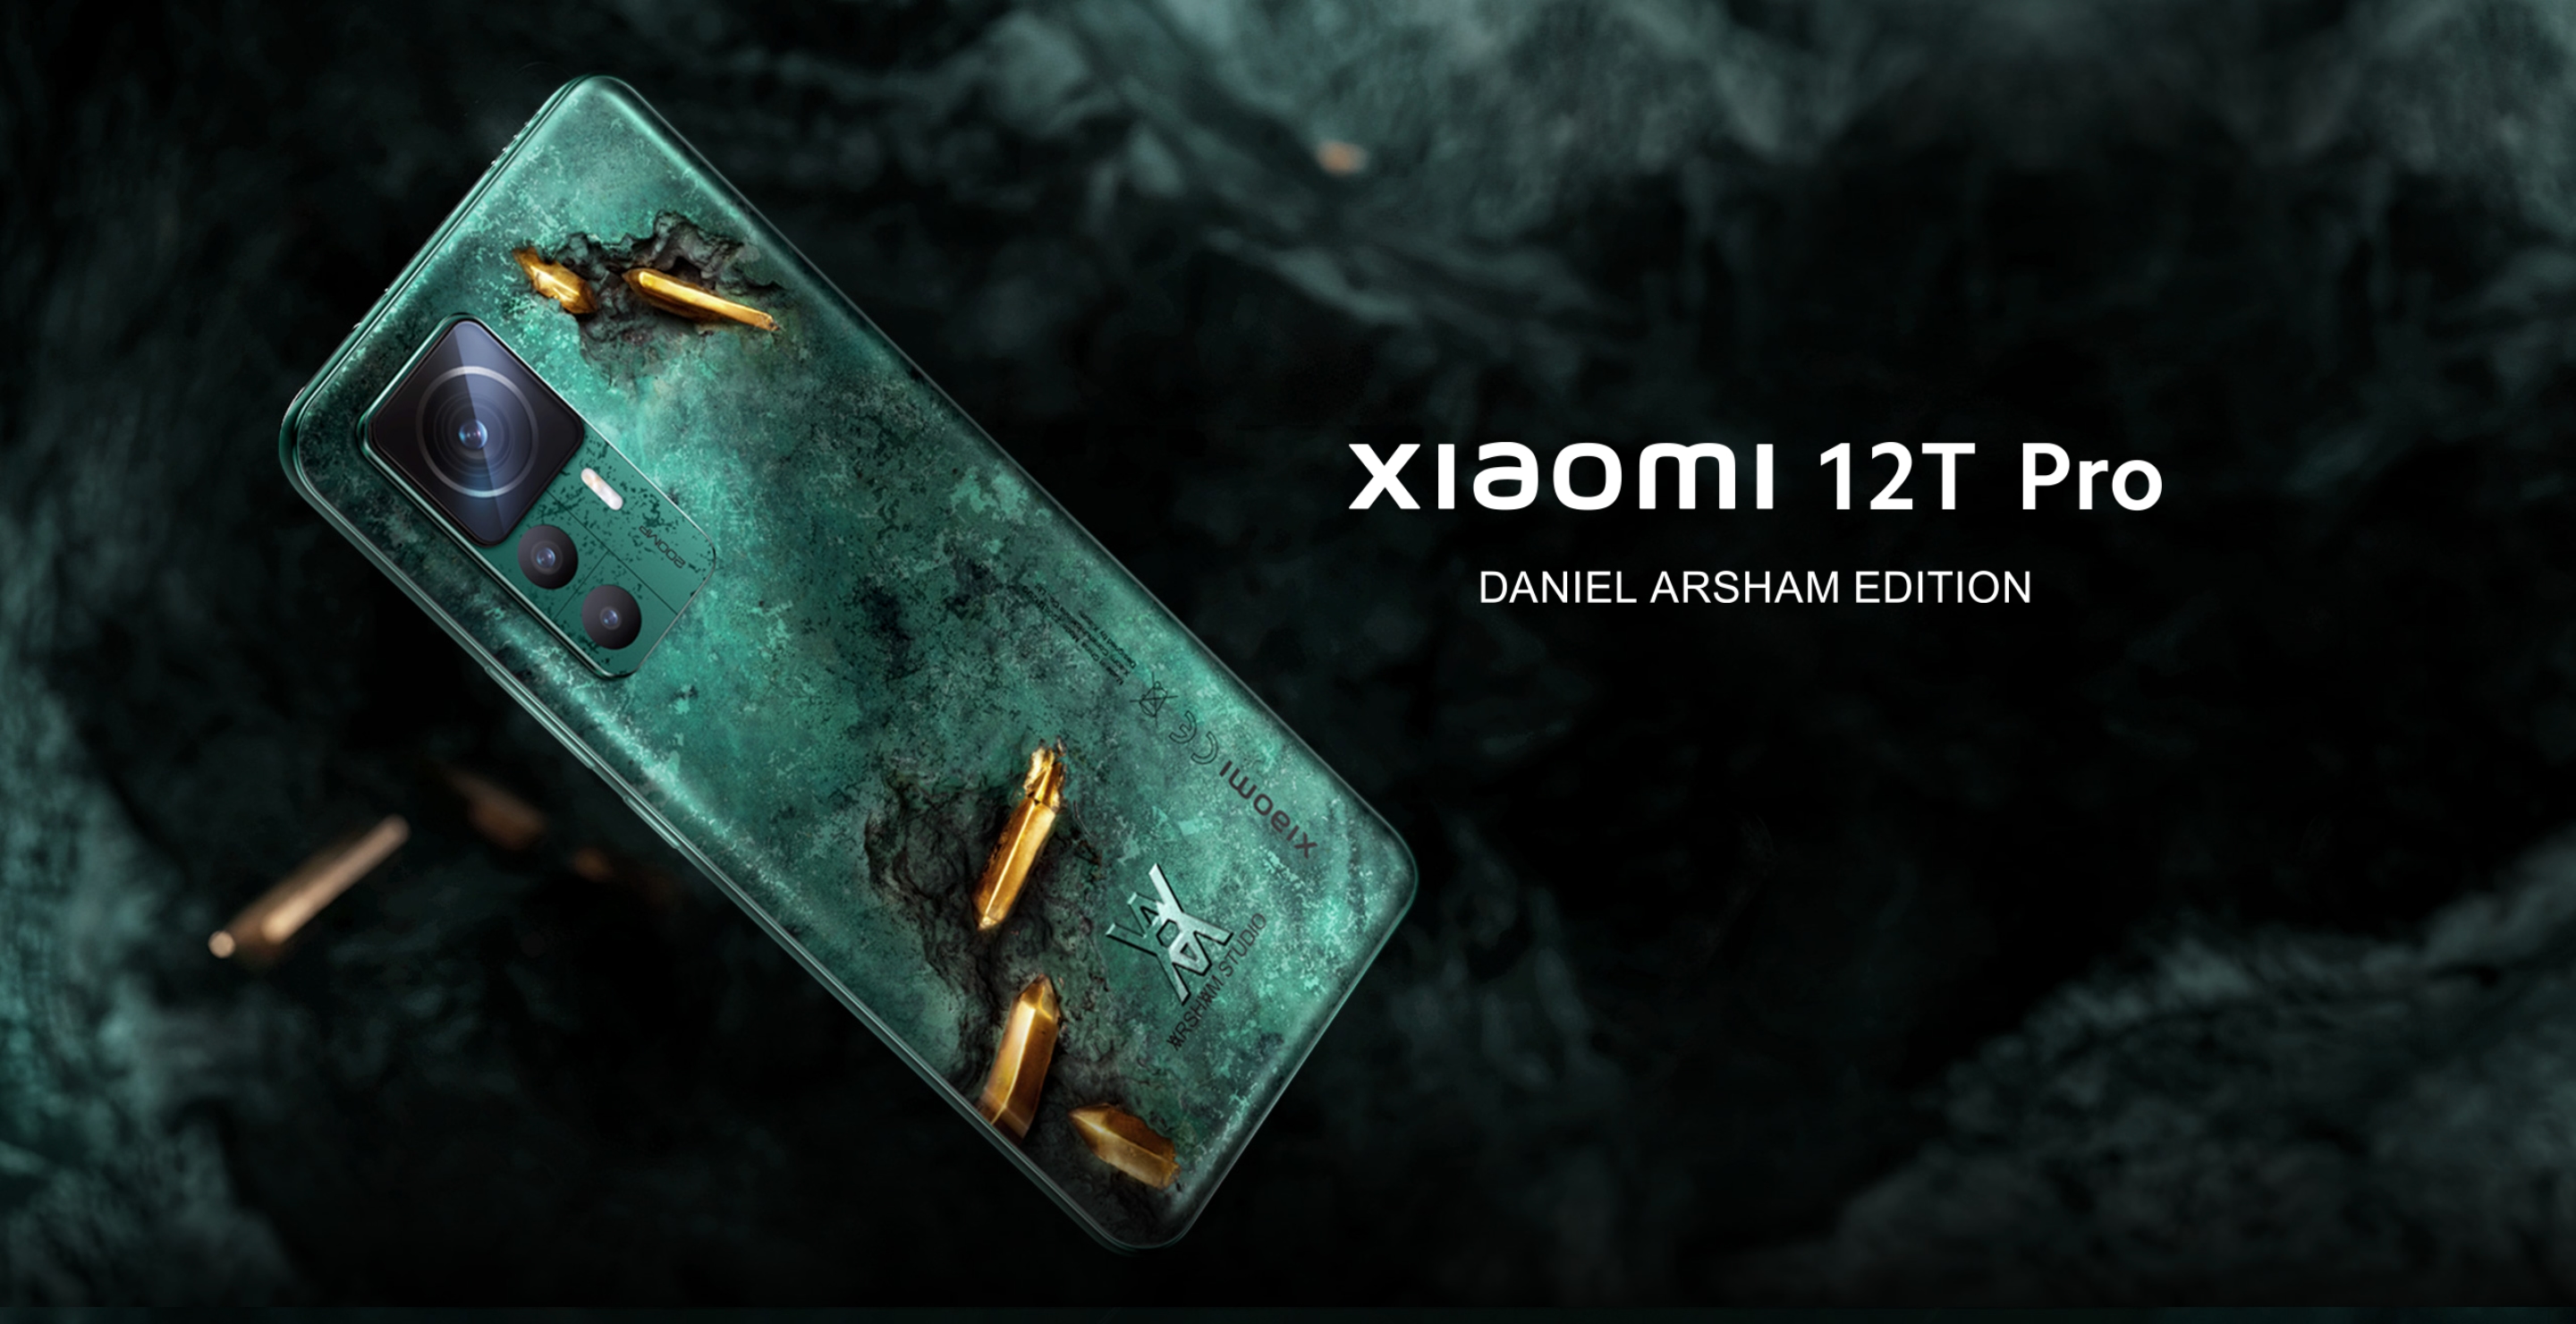 Xiaomi 12T Pro Daniel Arsham Edition: specjalna, przypominająca rzeźbę wersja Xiaomi 12T Pro